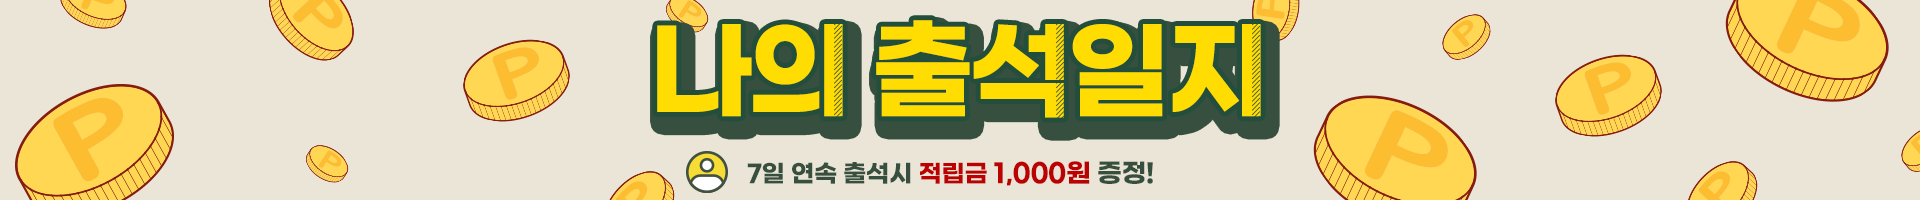 출석체크 이벤트(7일 연속 출석시 적립금 1000원!)